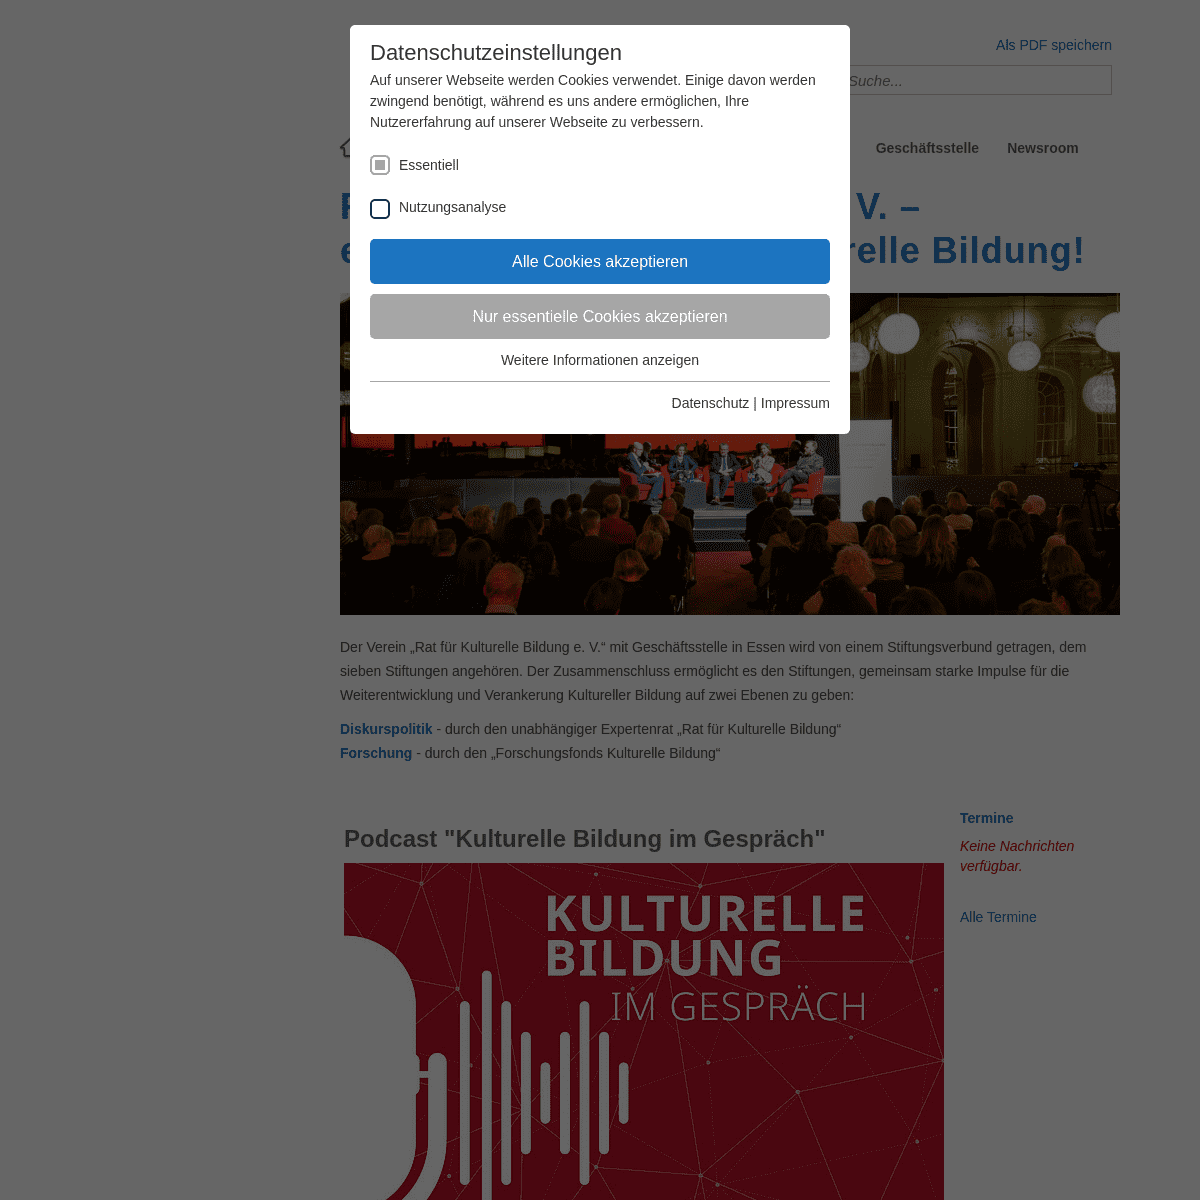 A complete backup of https://rat-kulturelle-bildung.de